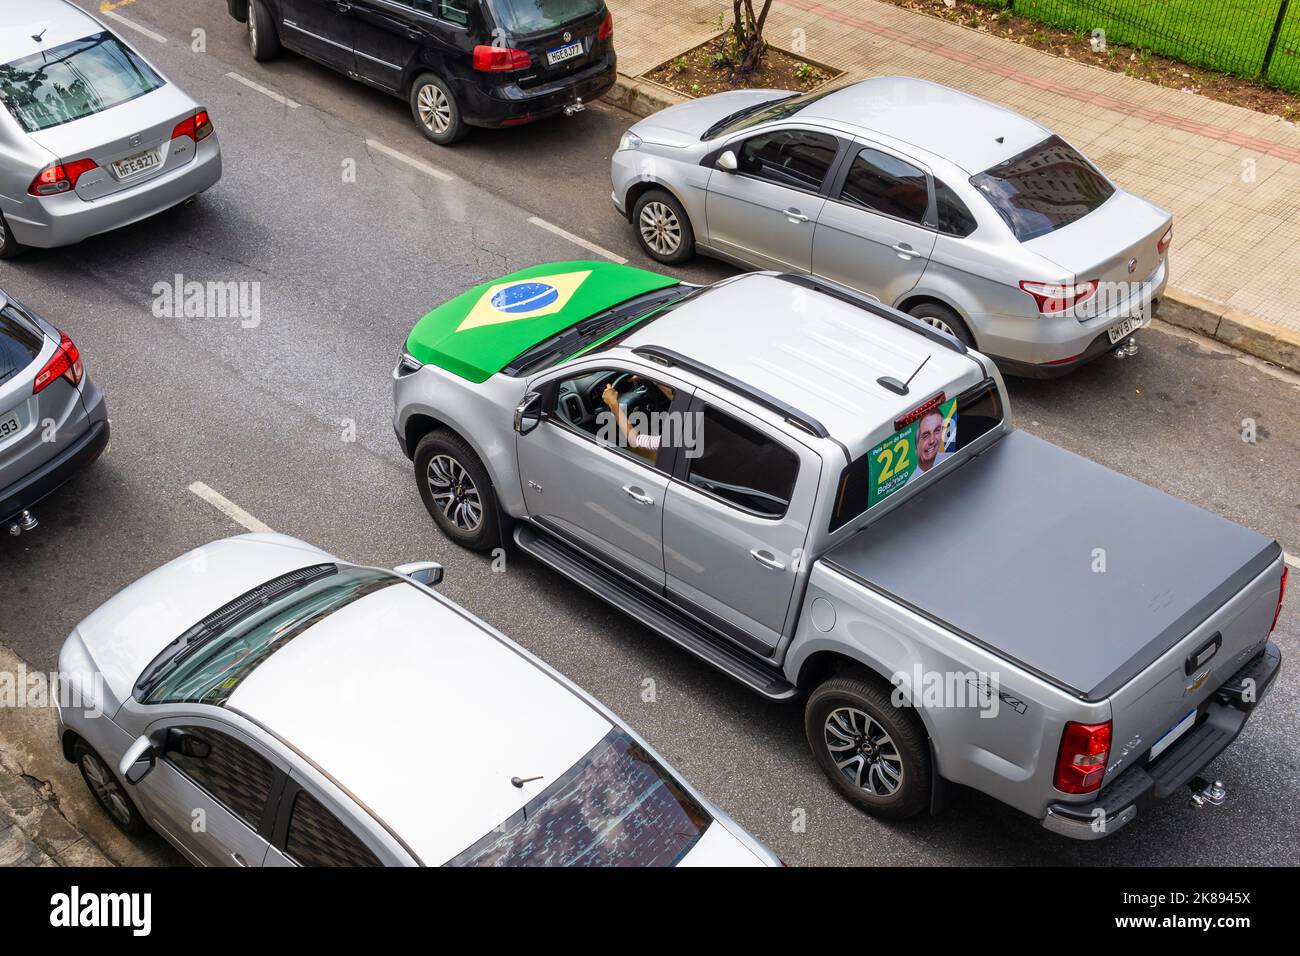 Camion 4x4 Chevrolet argent avec capot drapeau brésilien et publicité de campagne Bolsonaro sur la lunette arrière à Belo Horizonte, Brésil. Banque D'Images